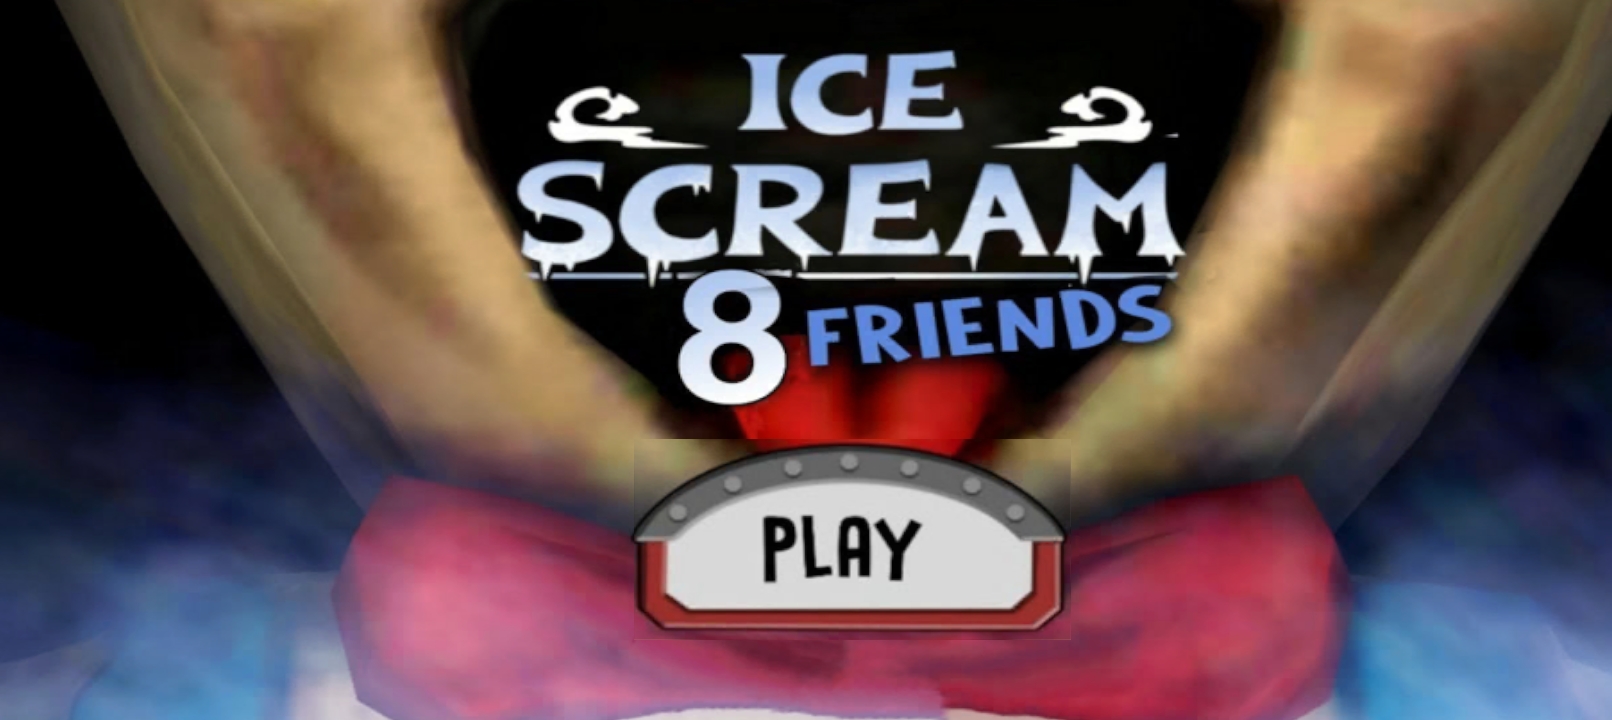 ice scream 8正式版下载-恐怖冰淇淋8同人版(ice scream 8)1.1最新版